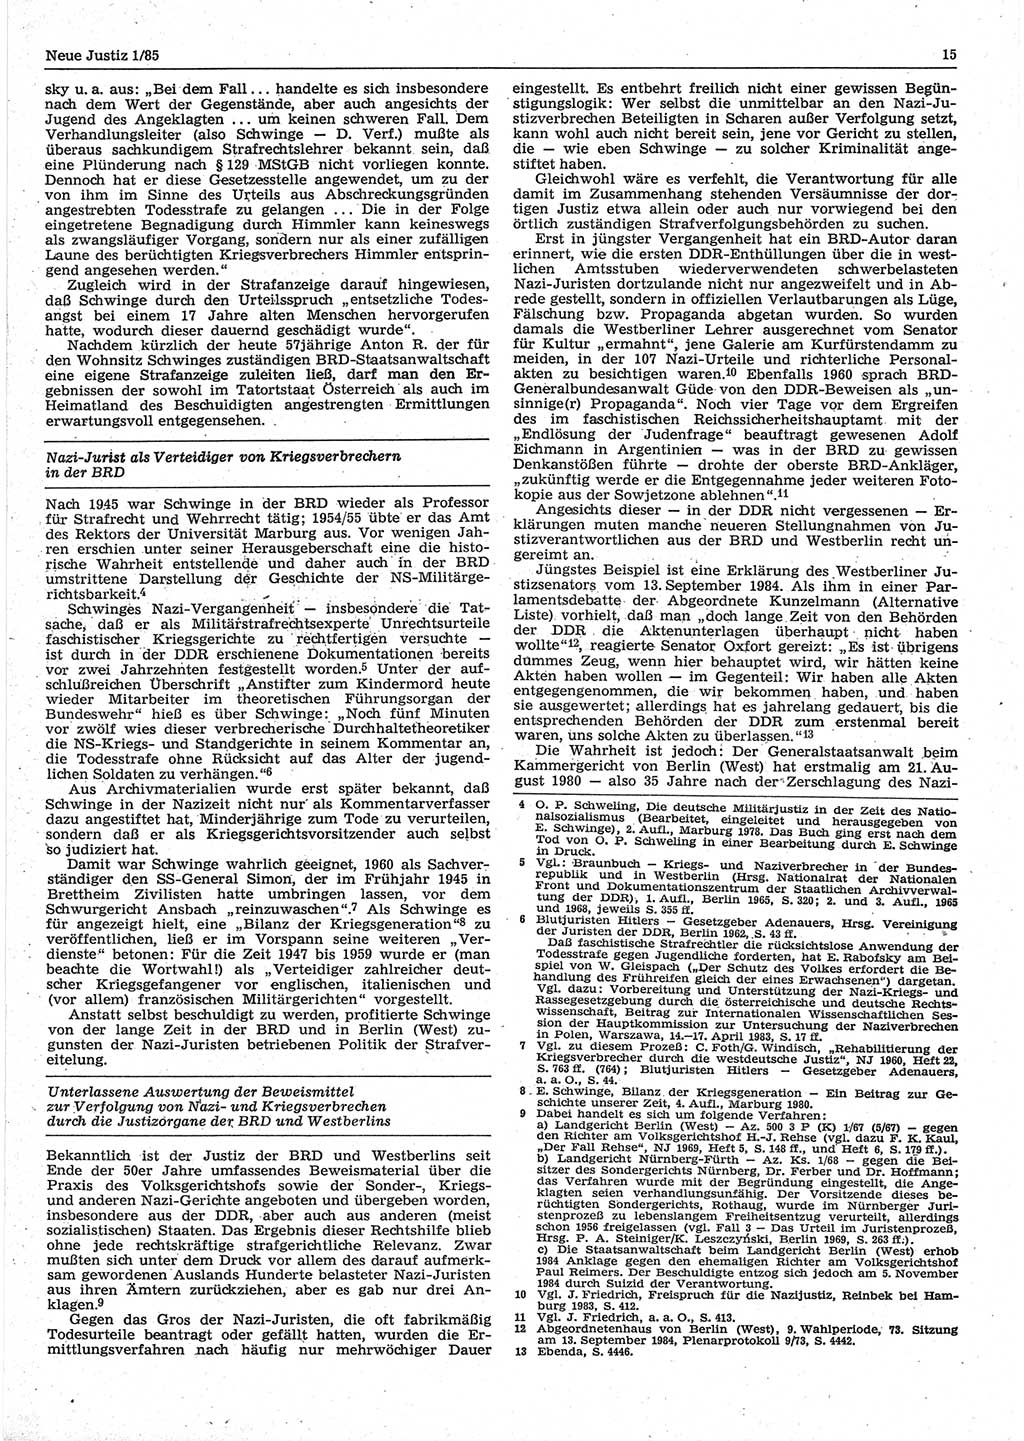 Neue Justiz (NJ), Zeitschrift für sozialistisches Recht und Gesetzlichkeit [Deutsche Demokratische Republik (DDR)], 39. Jahrgang 1985, Seite 15 (NJ DDR 1985, S. 15)